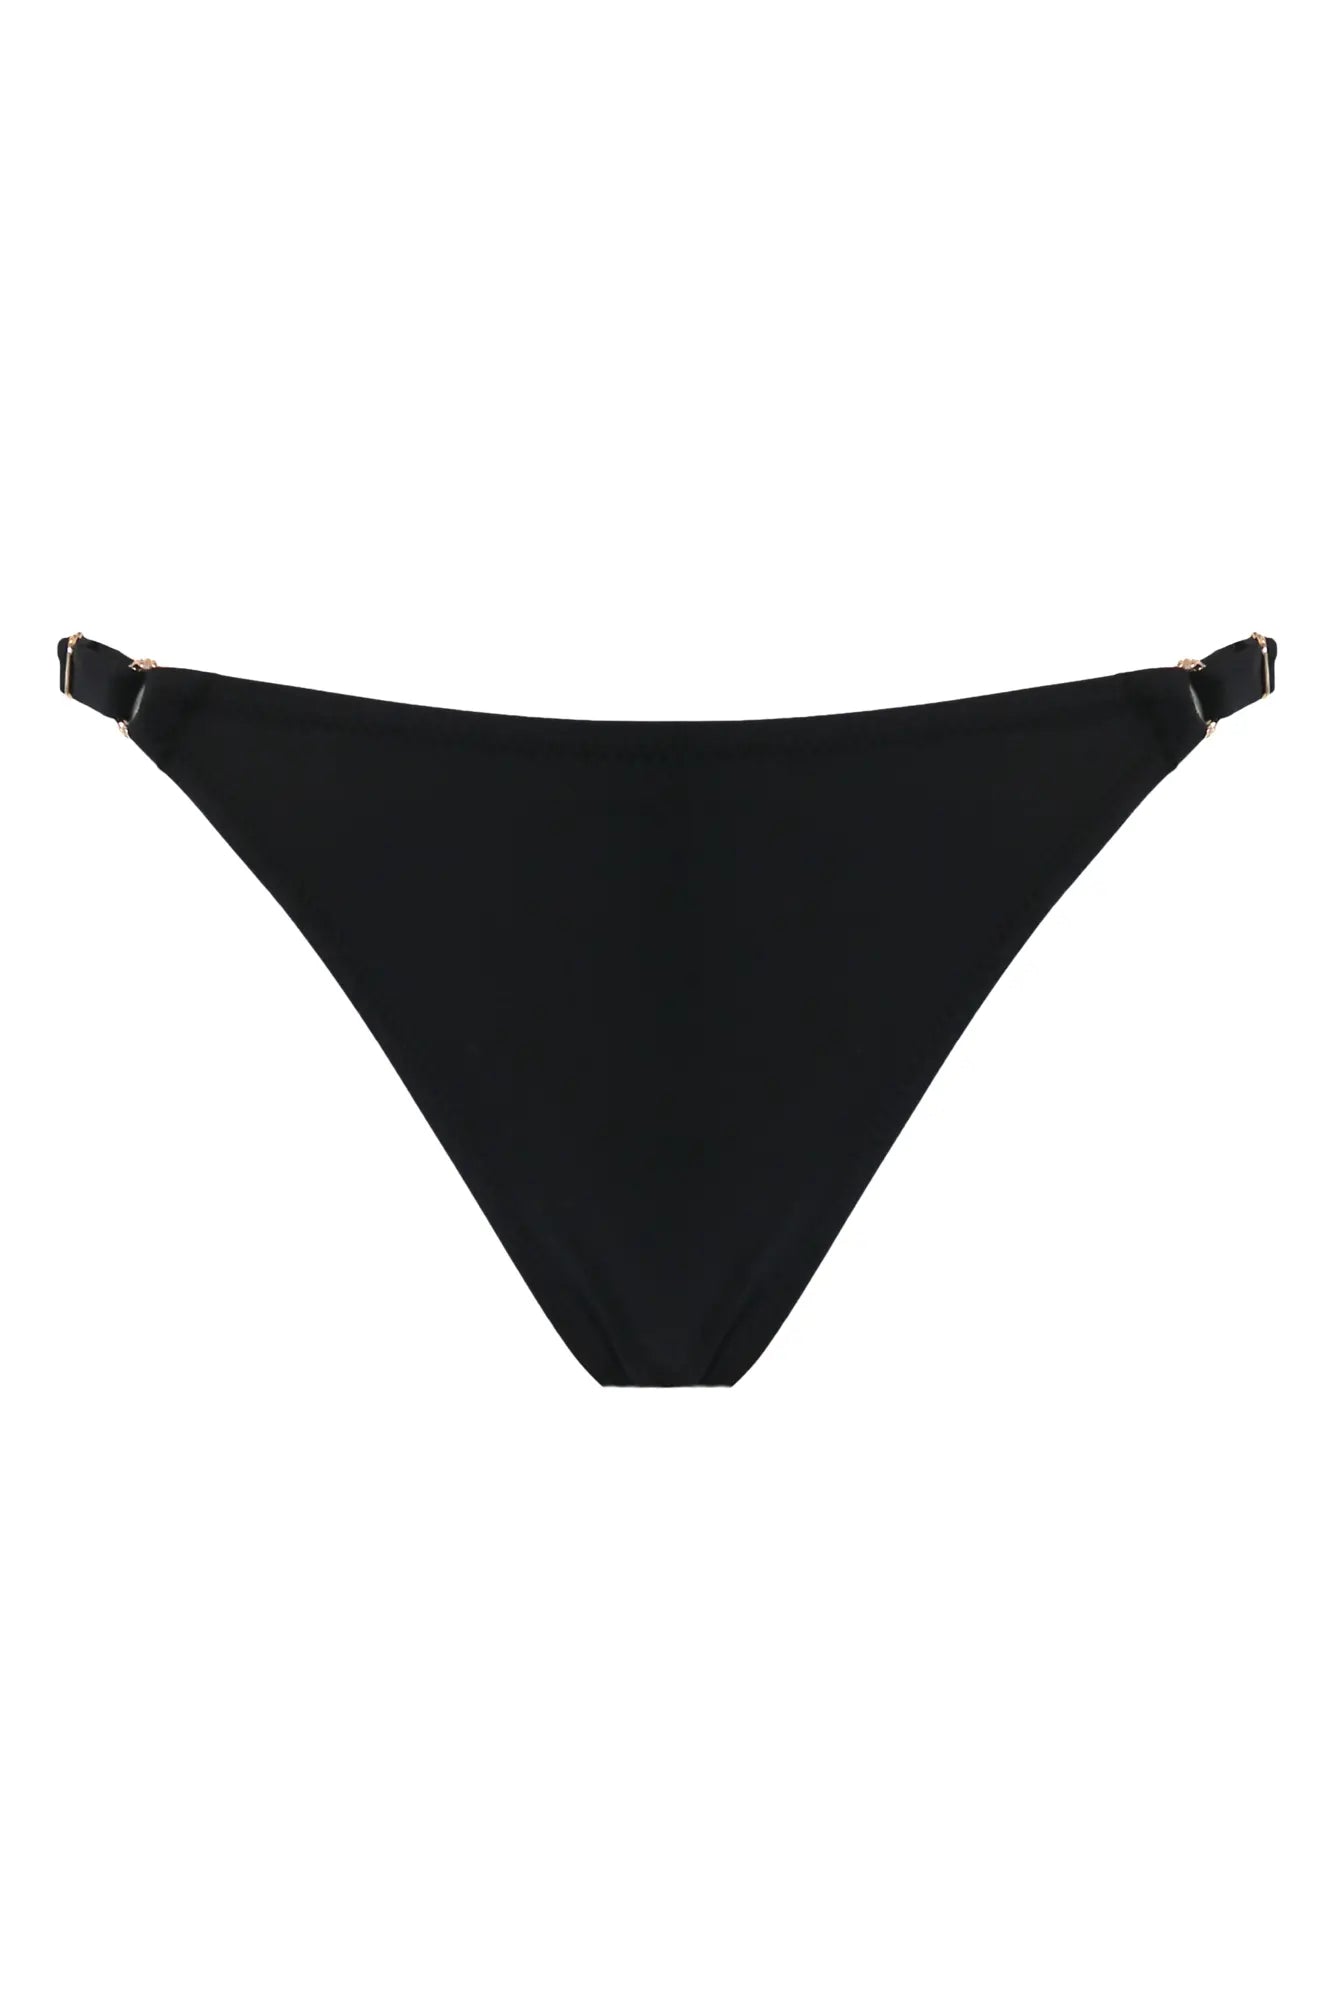 Mykonos - Bas de bikini réglable à col bénitier - Pour Moi